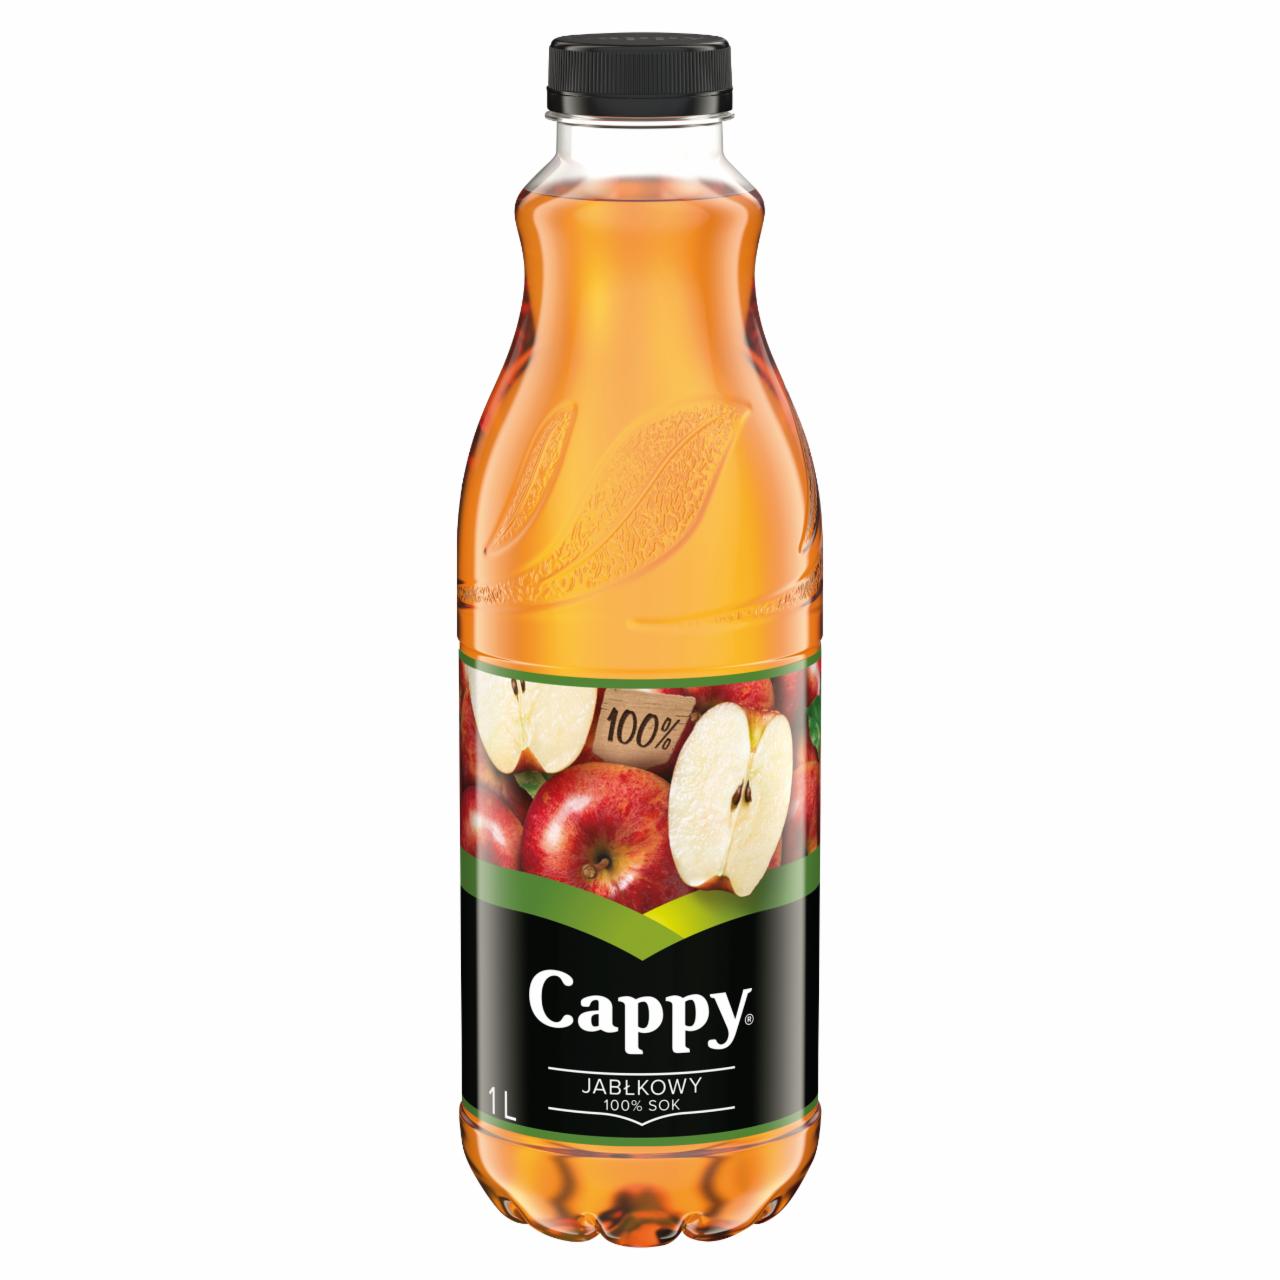 Zdjęcia - Cappy 100 % sok jabłkowy 1 l